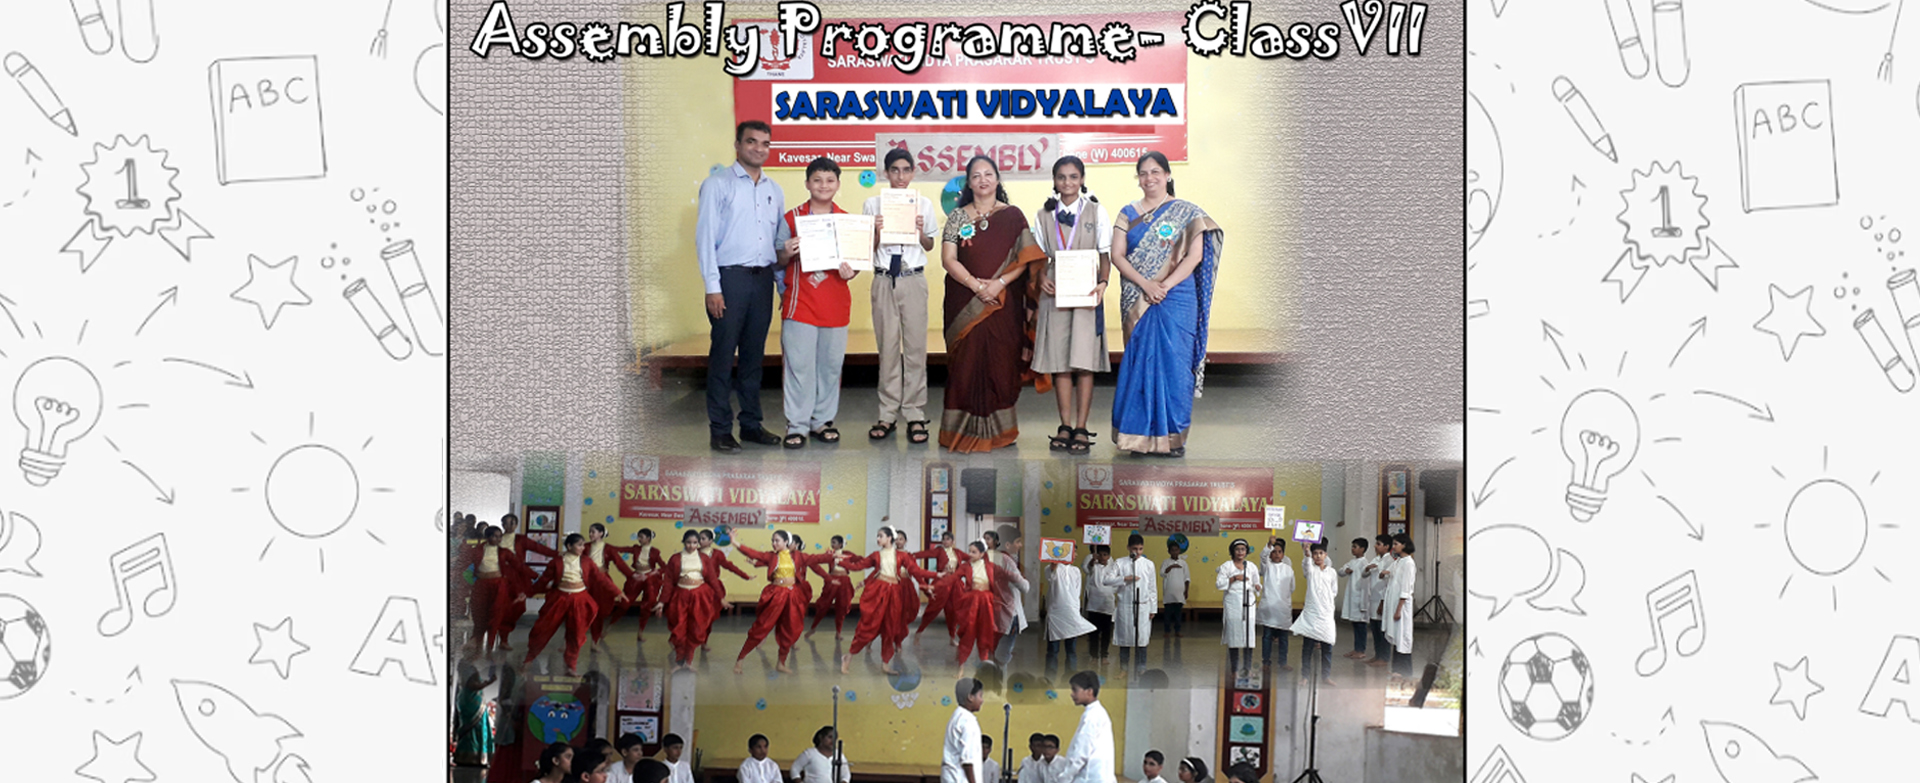 Assembly Programme - Class VII